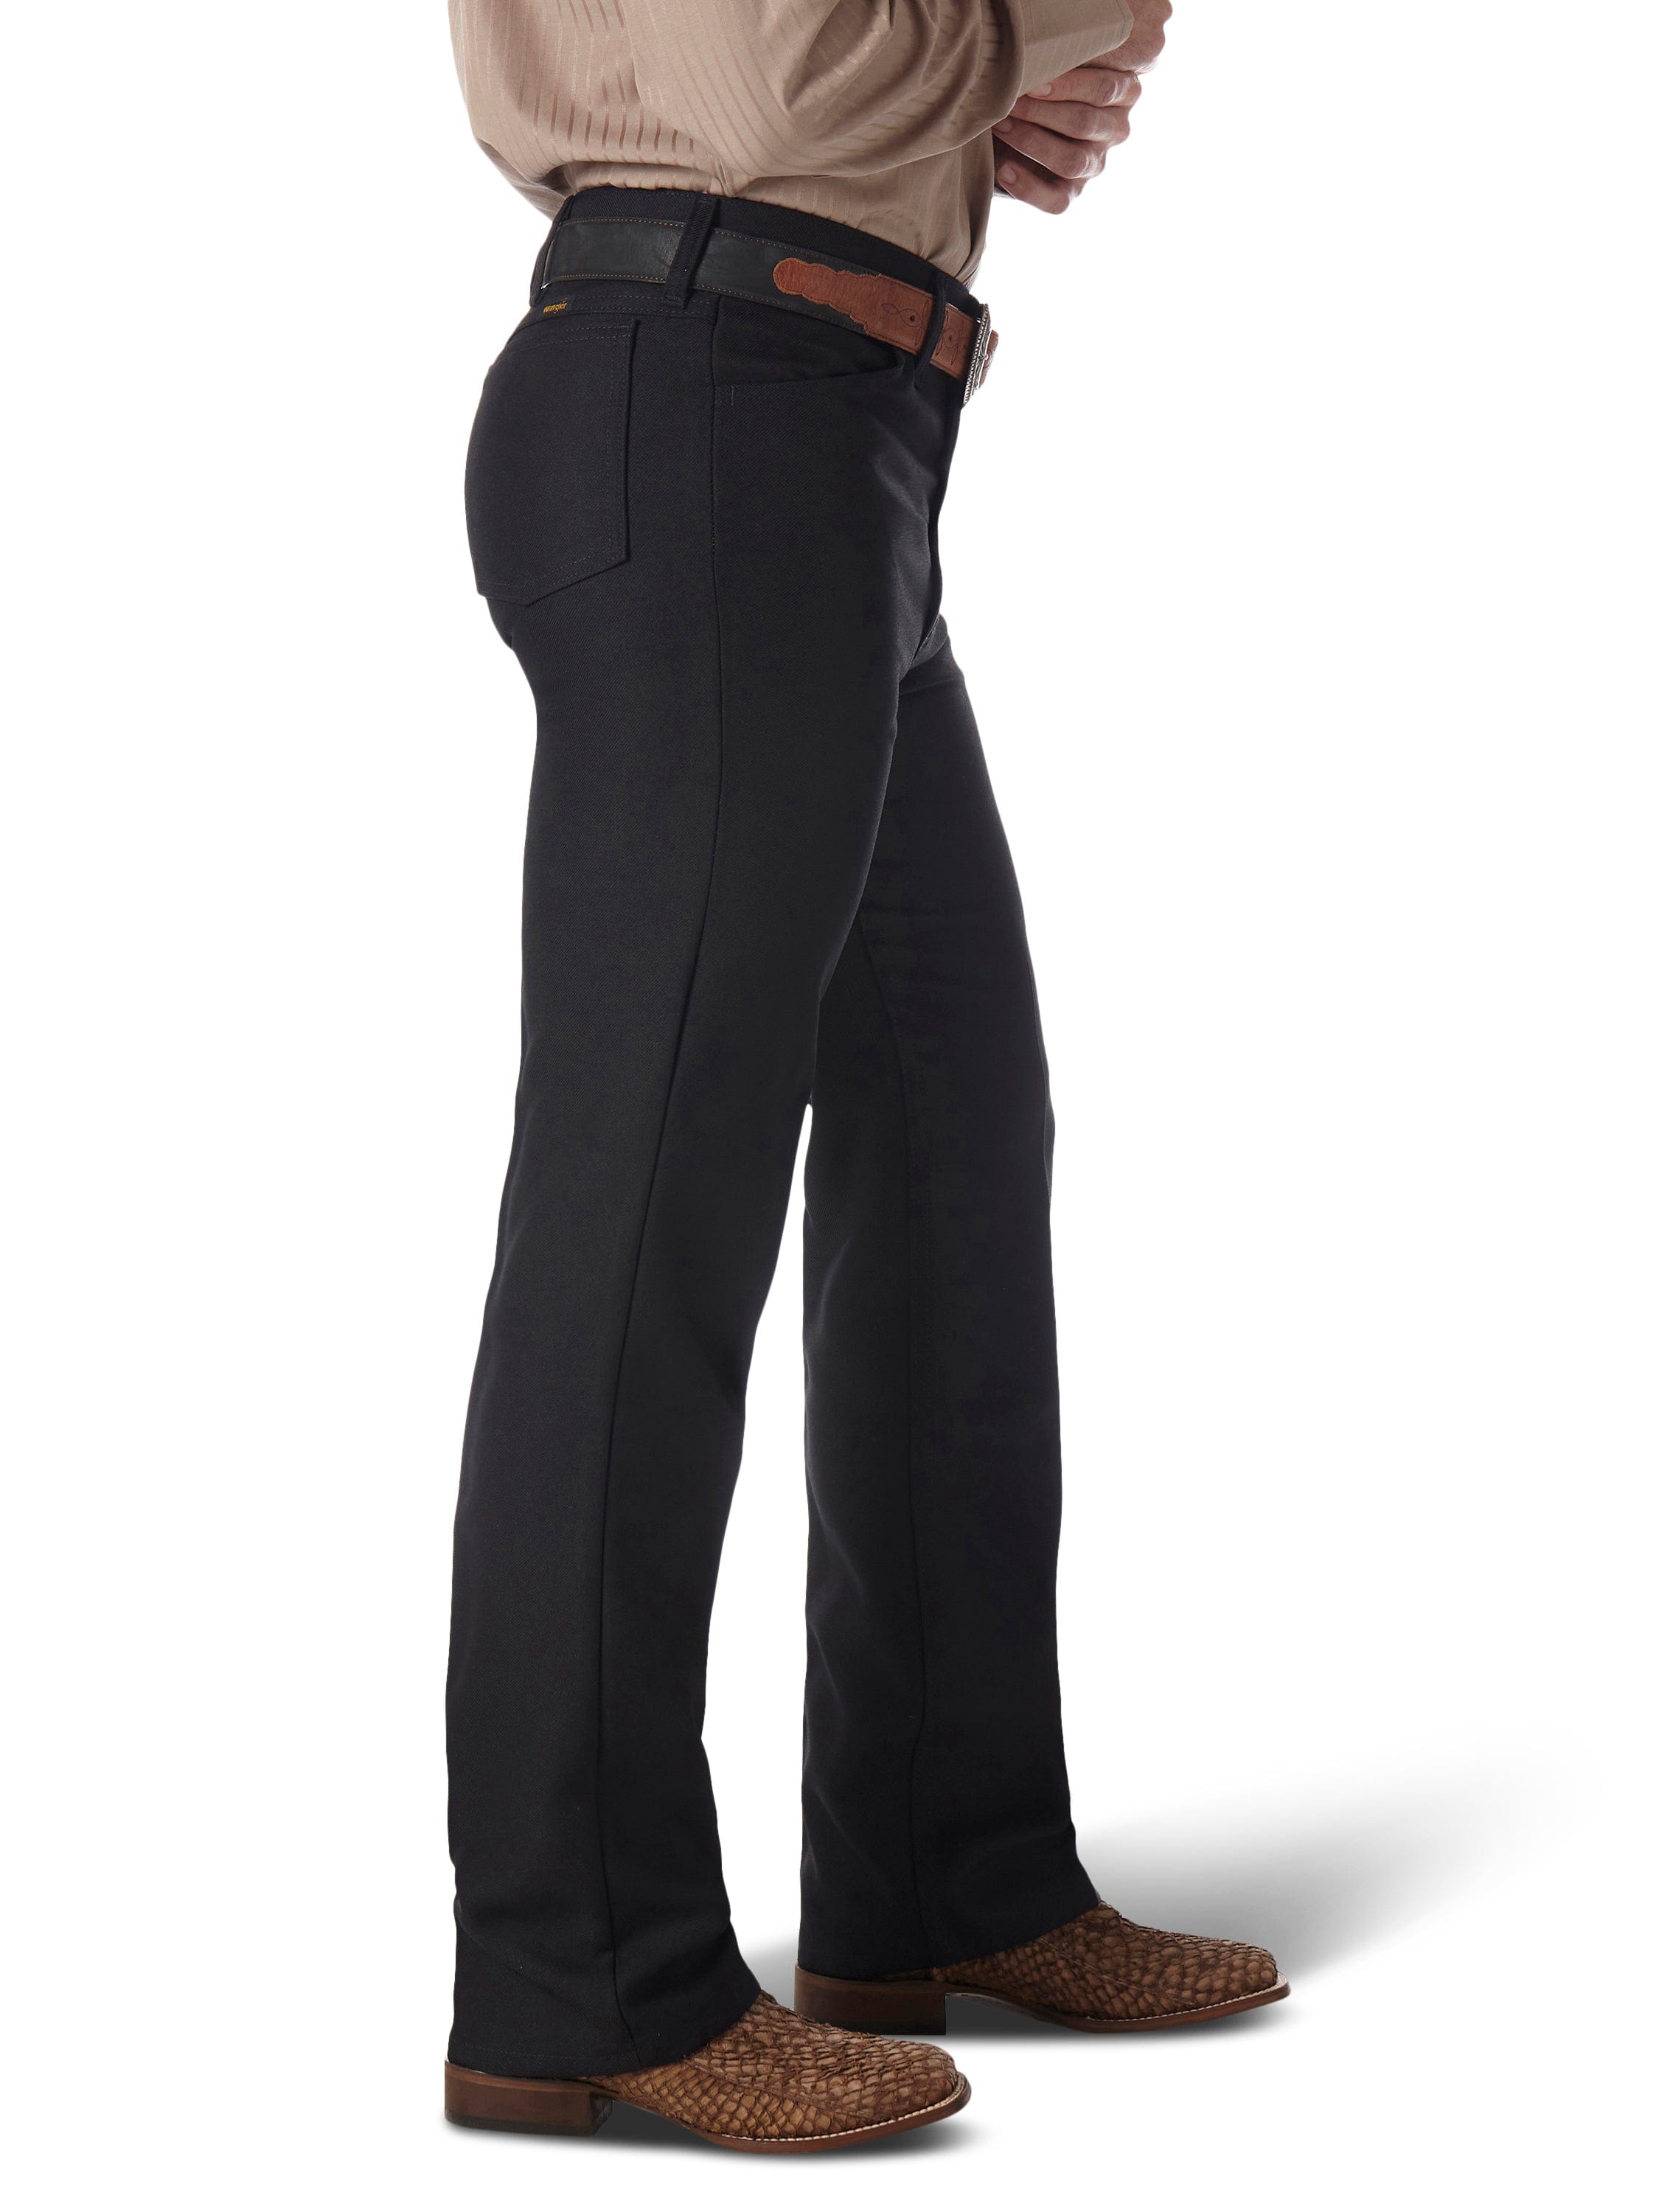 https://www.russells.com/cdn/shop/products/wrangler-jeans-jeans-wrangler-men-s-wrancher-black-dress-jeans-00082bk-34699563335838_5000x.jpg?v=1691782102